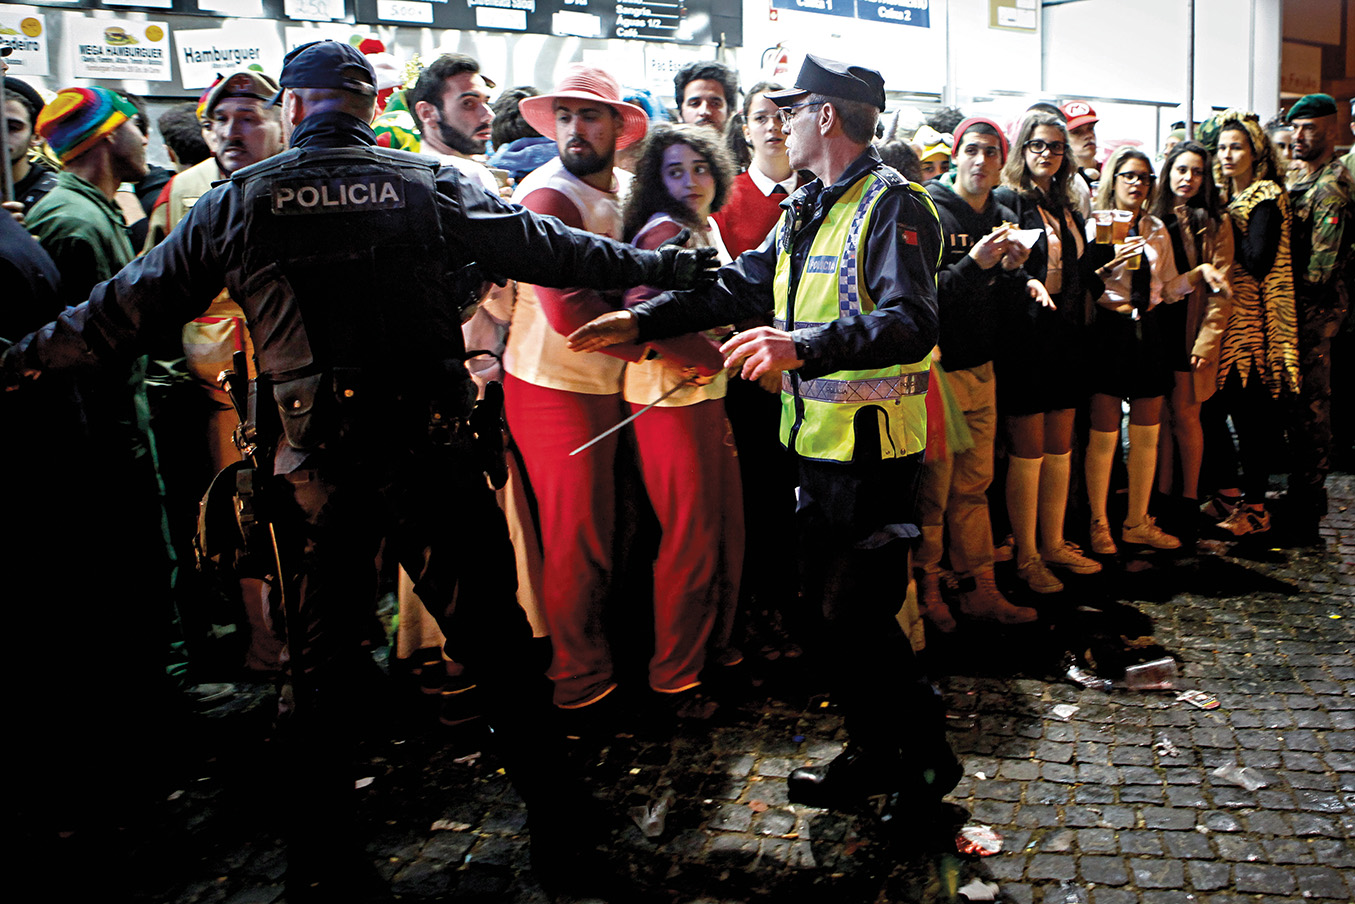 PSP. 538 detidos na Operação Carnaval em Segurança